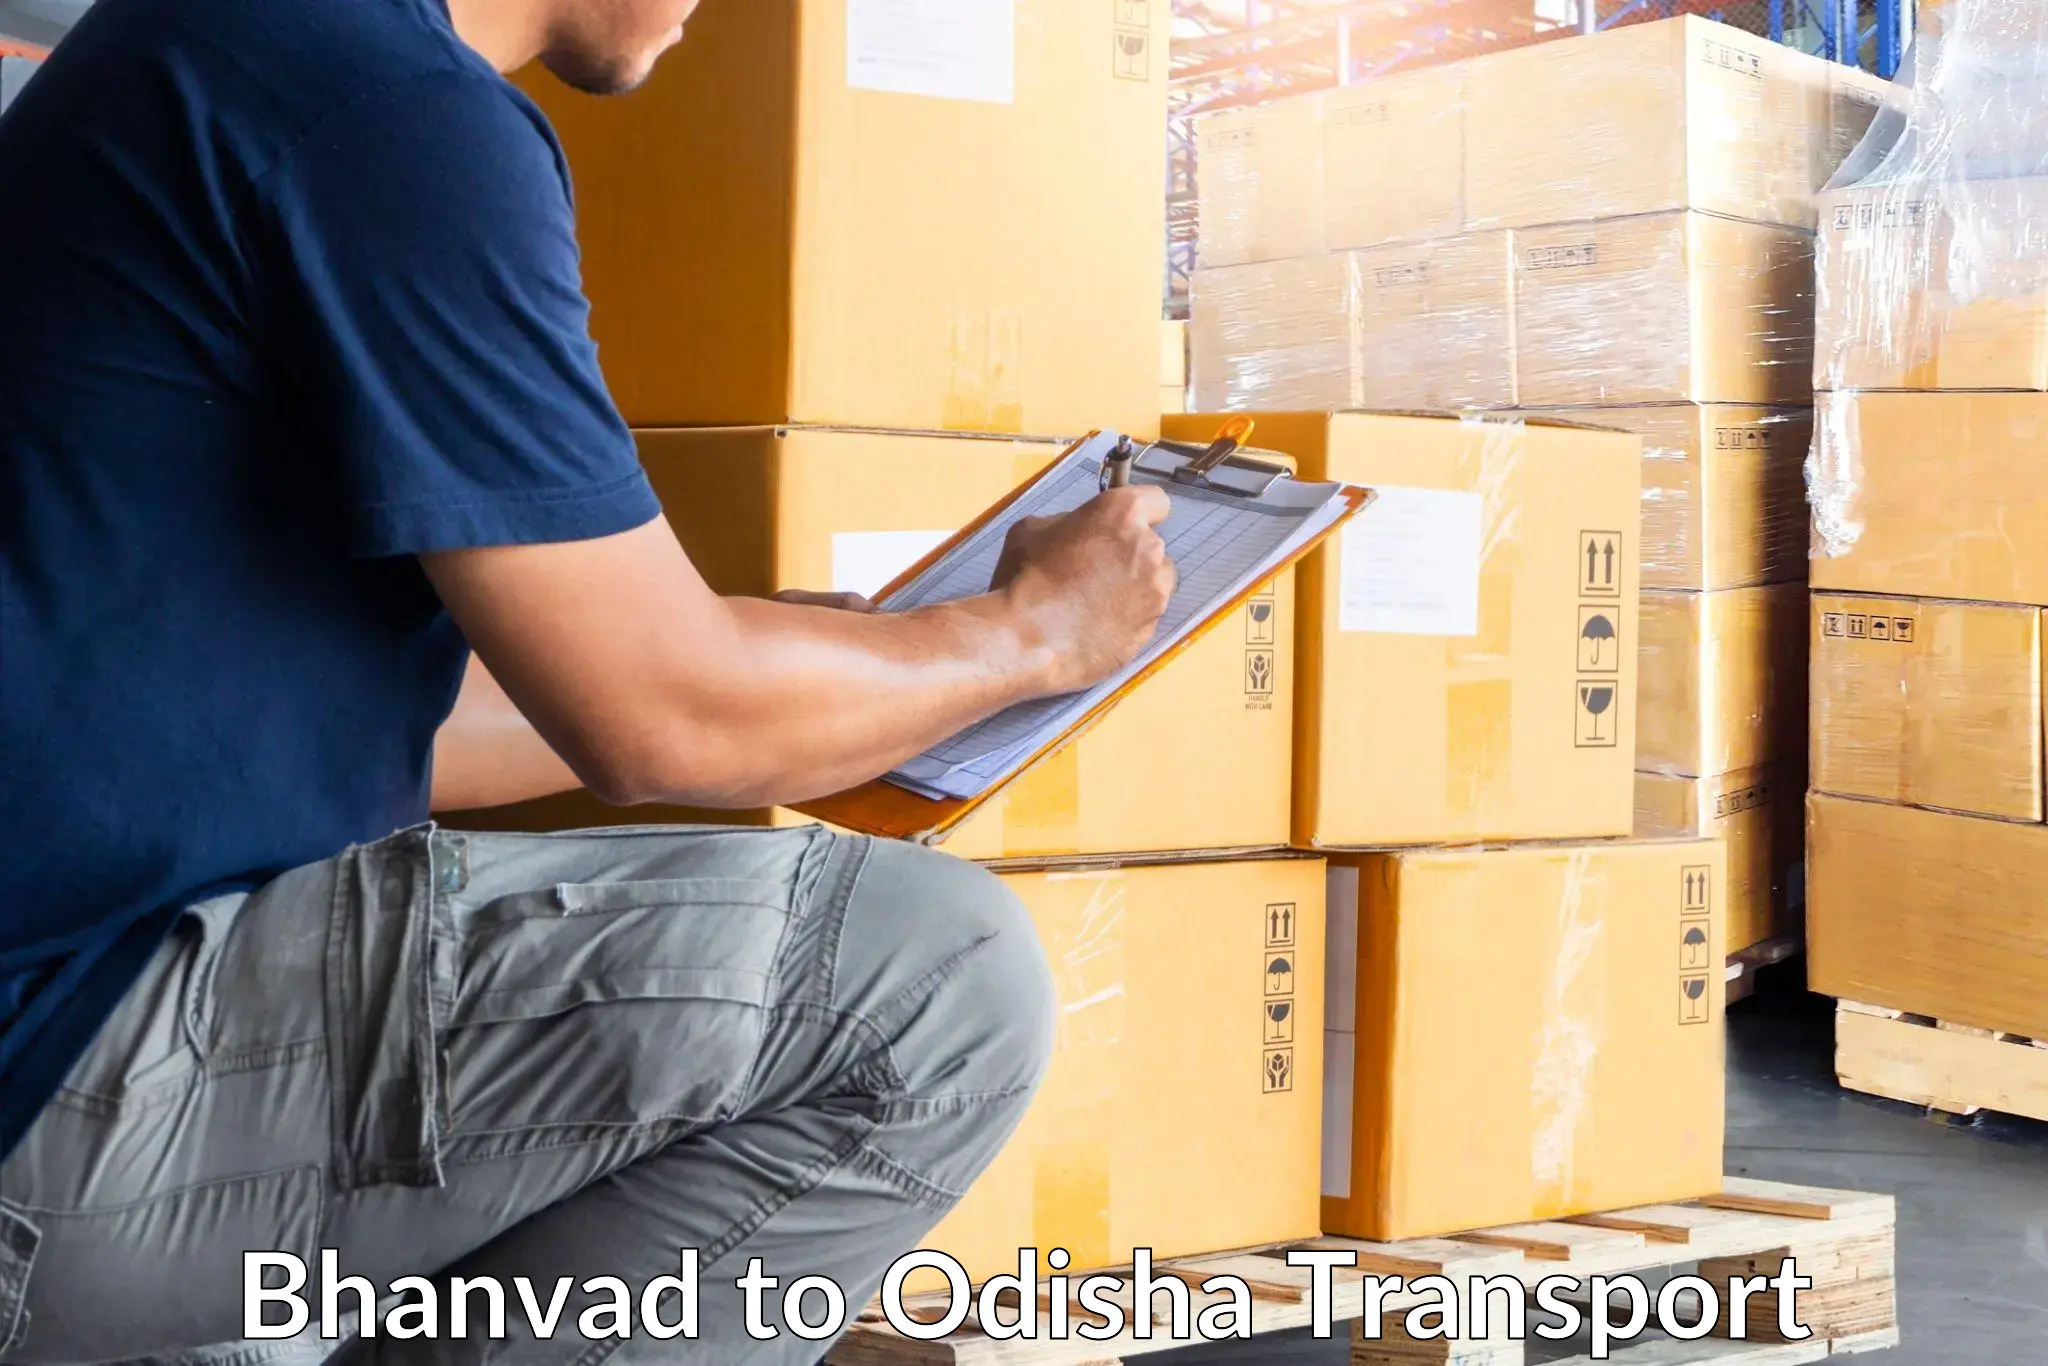 Shipping partner Bhanvad to Mahakalapada